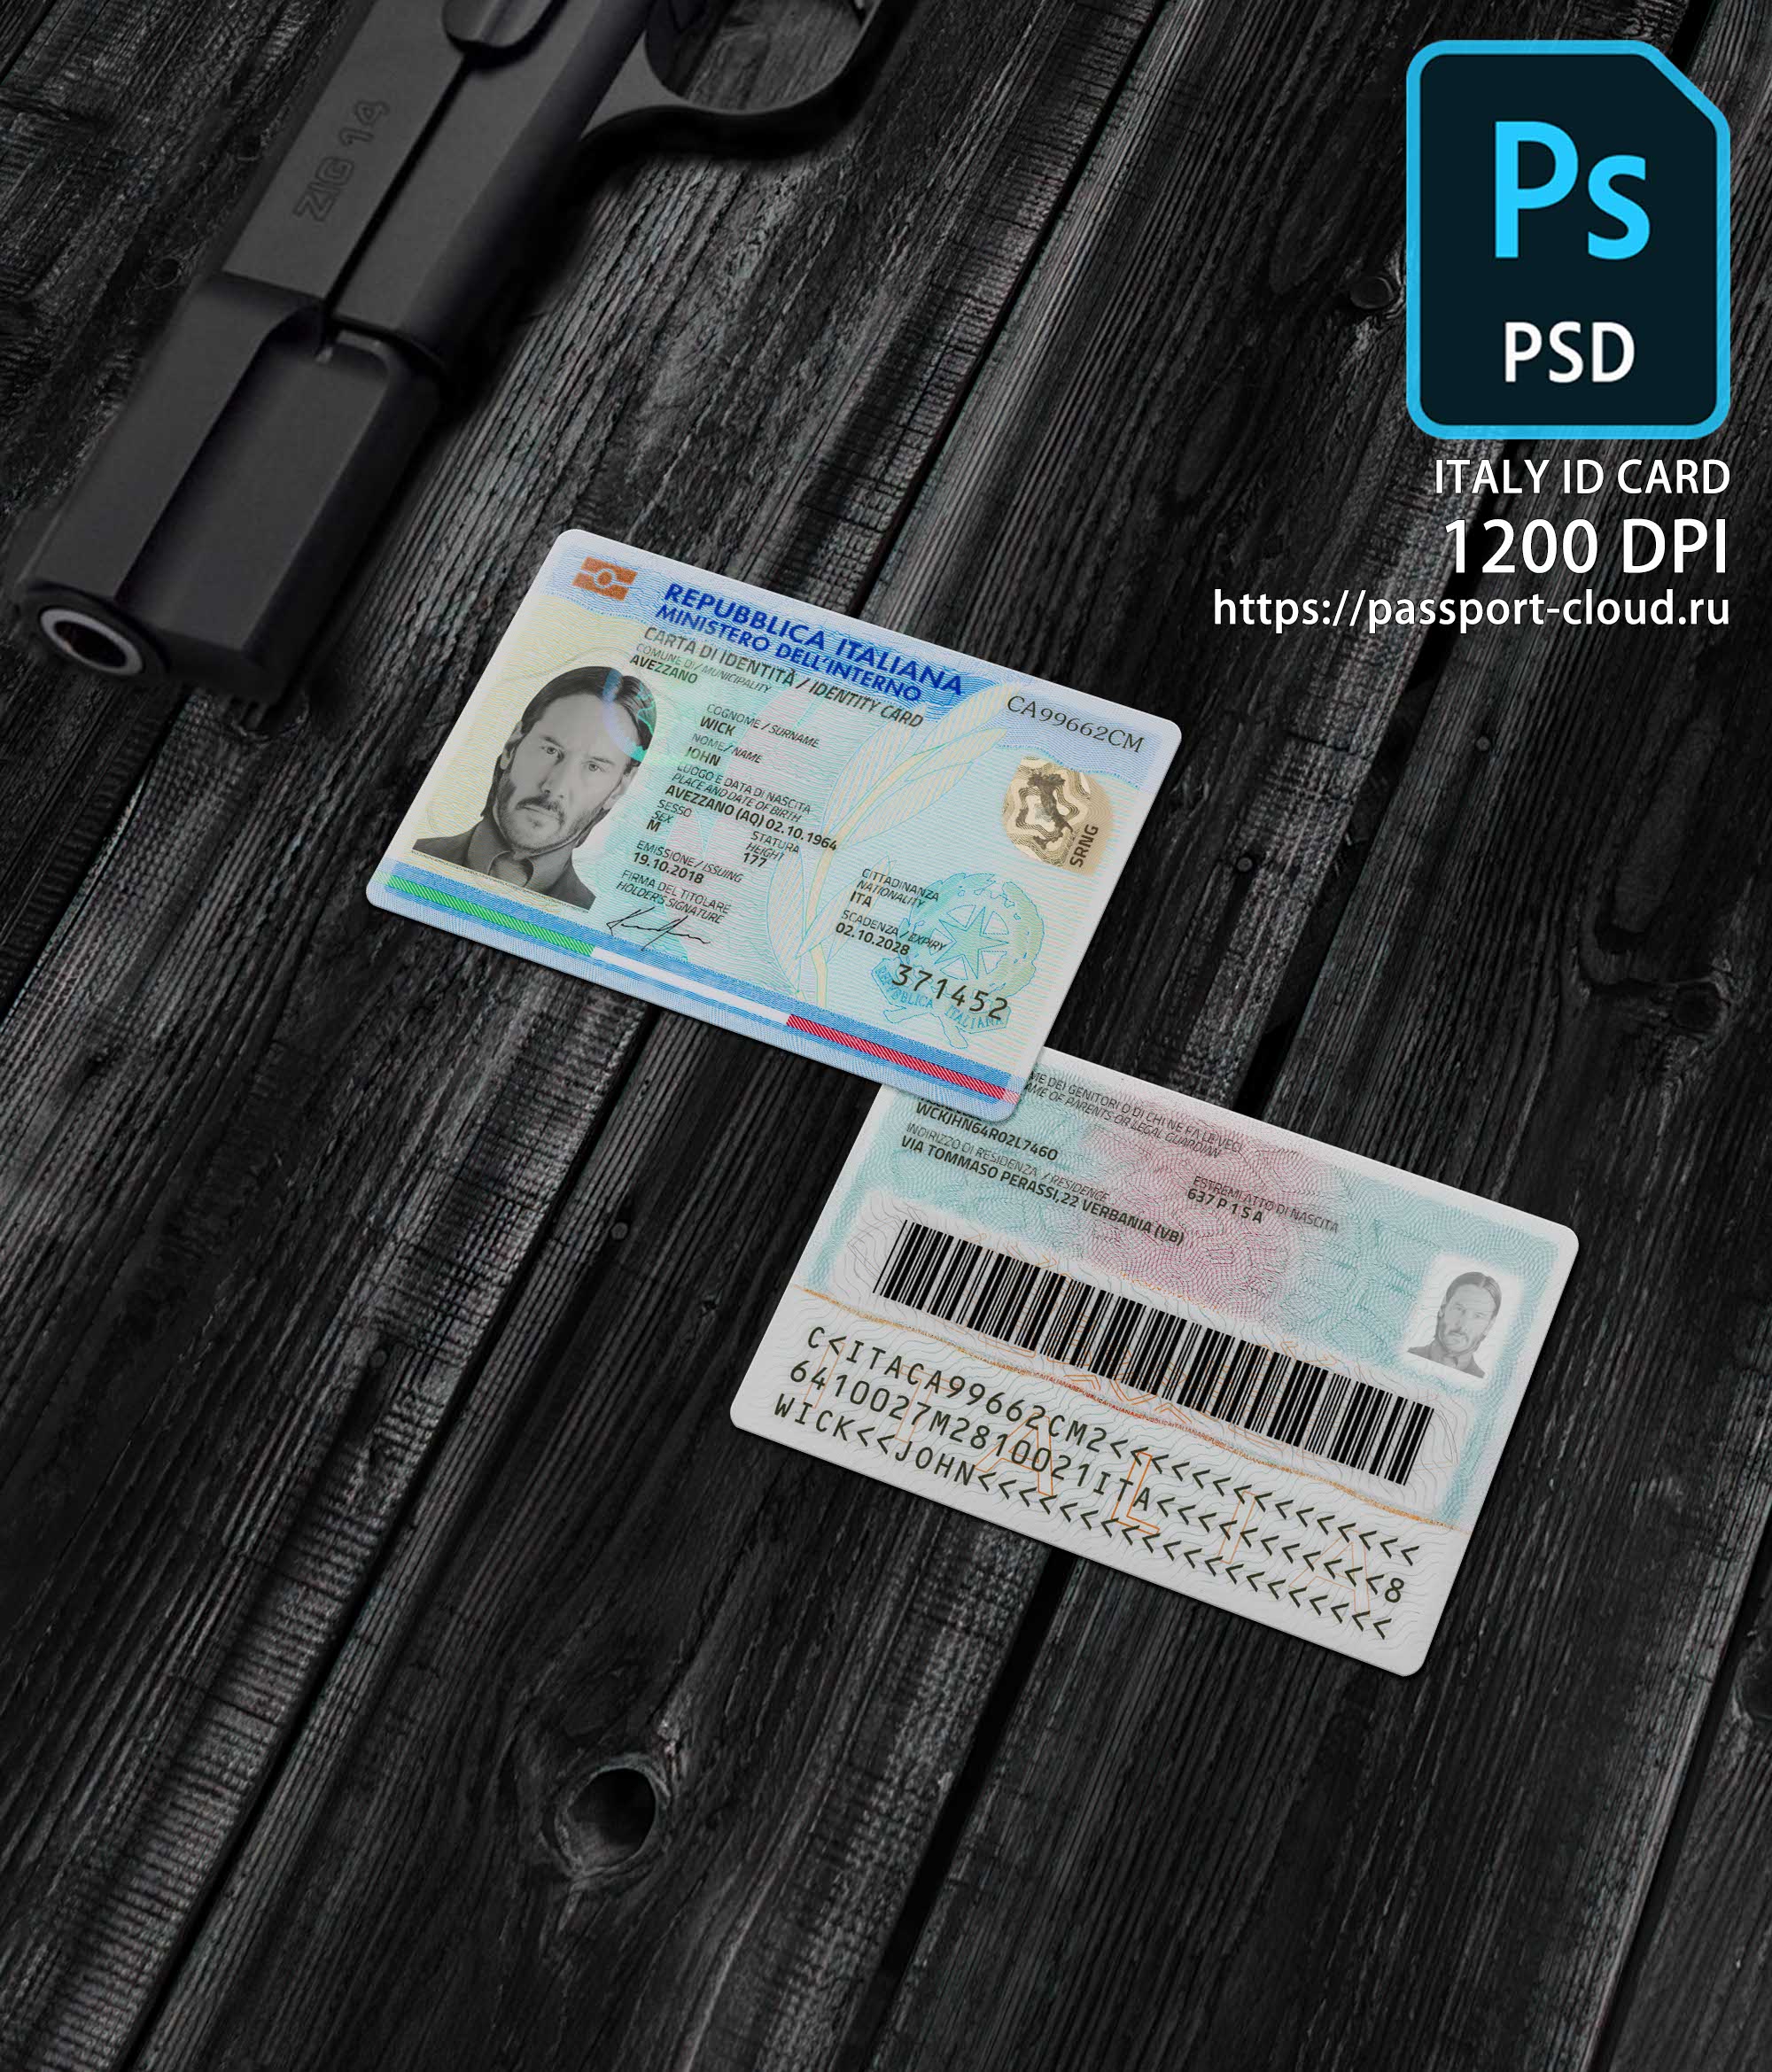 Italy ID Card 2016+ PSD1